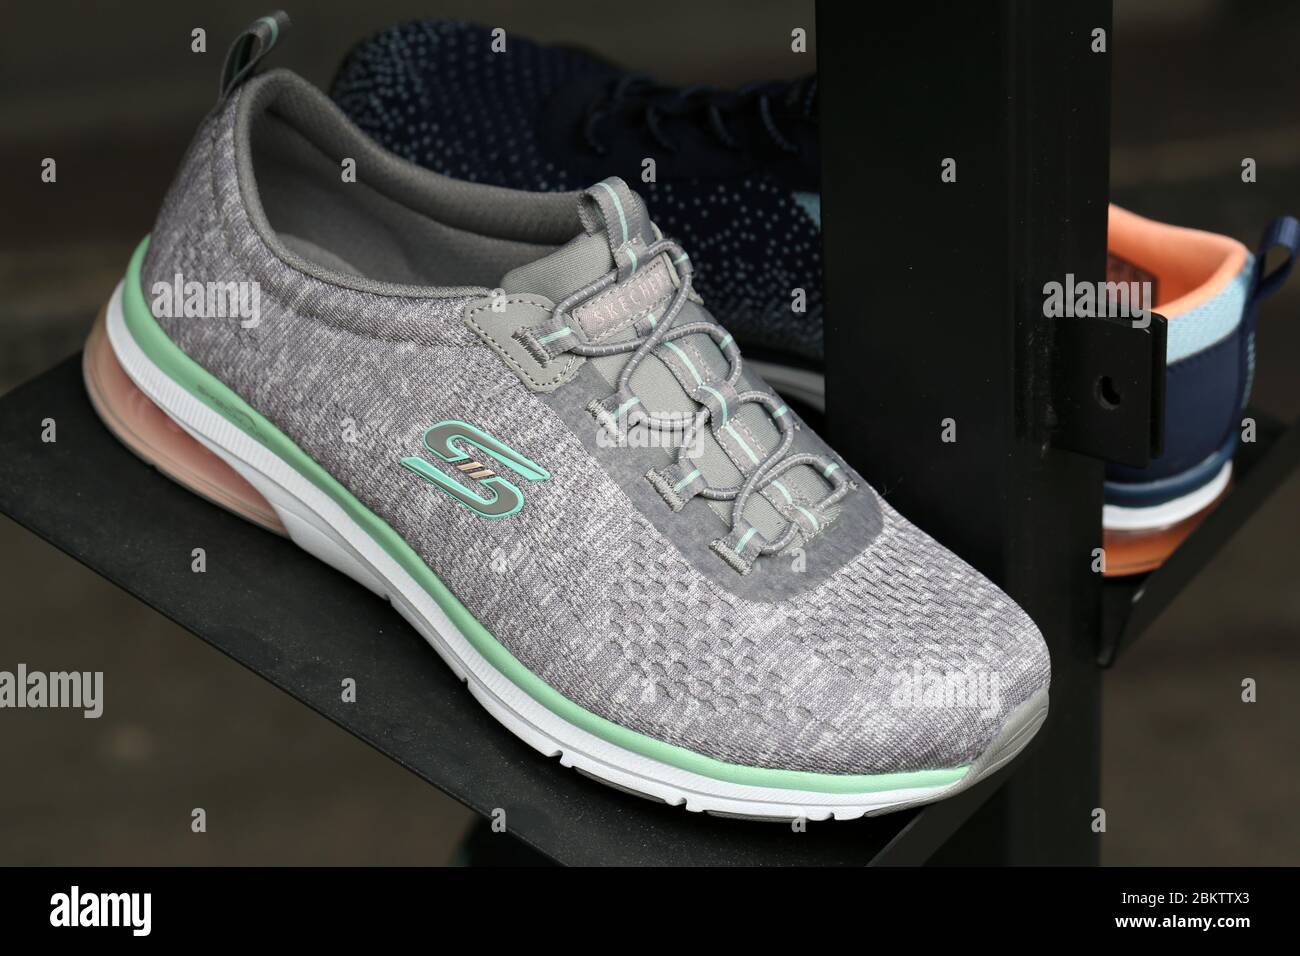 New Skechers Shoes Stockfotos und -bilder Kaufen - Alamy